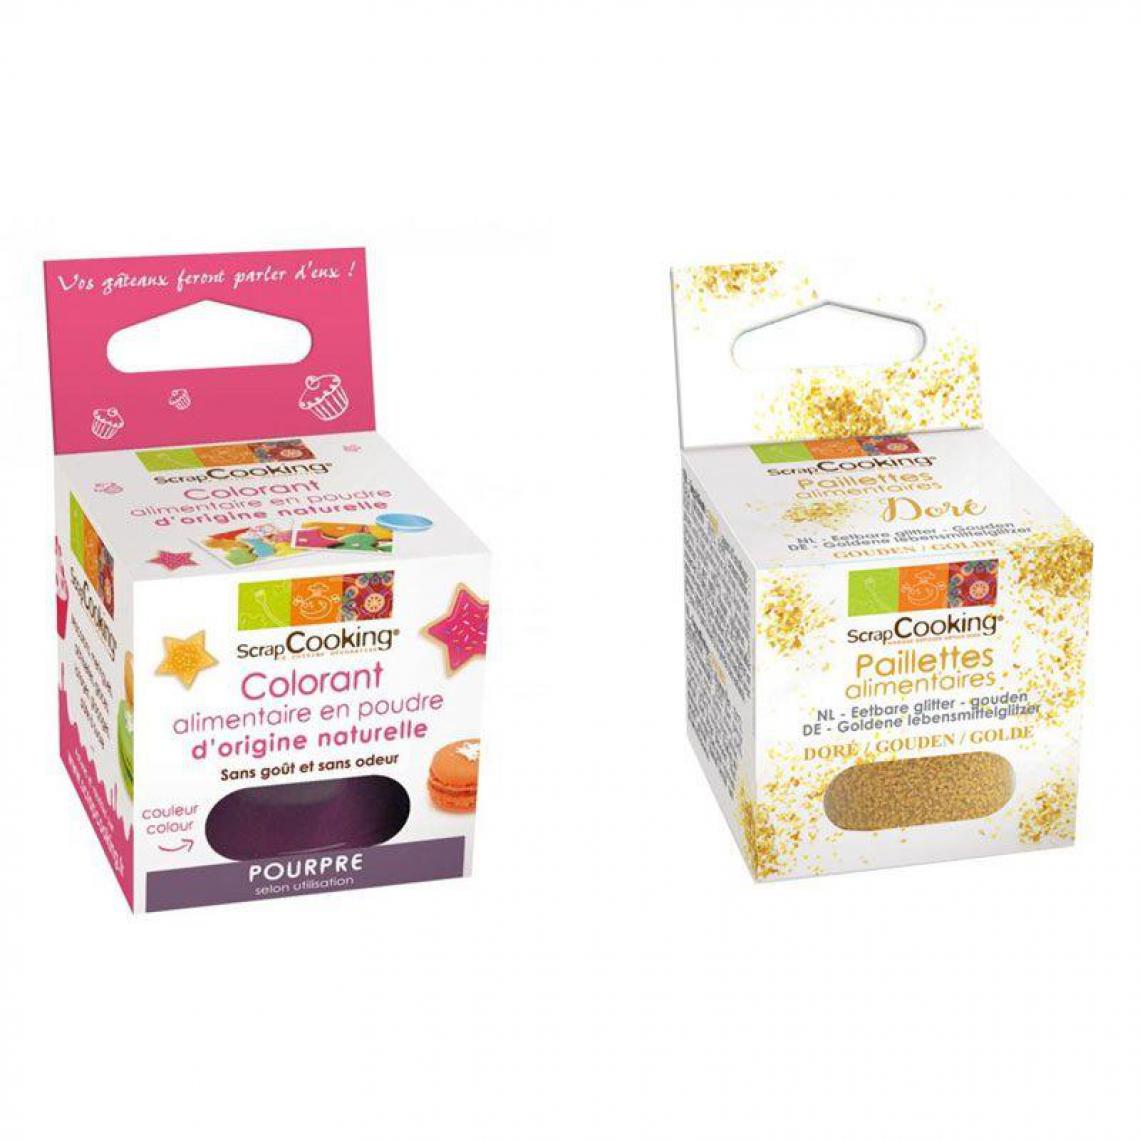 Scrapcooking - Colorant alimentaire Pourpre + paillettes dorées - Kits créatifs